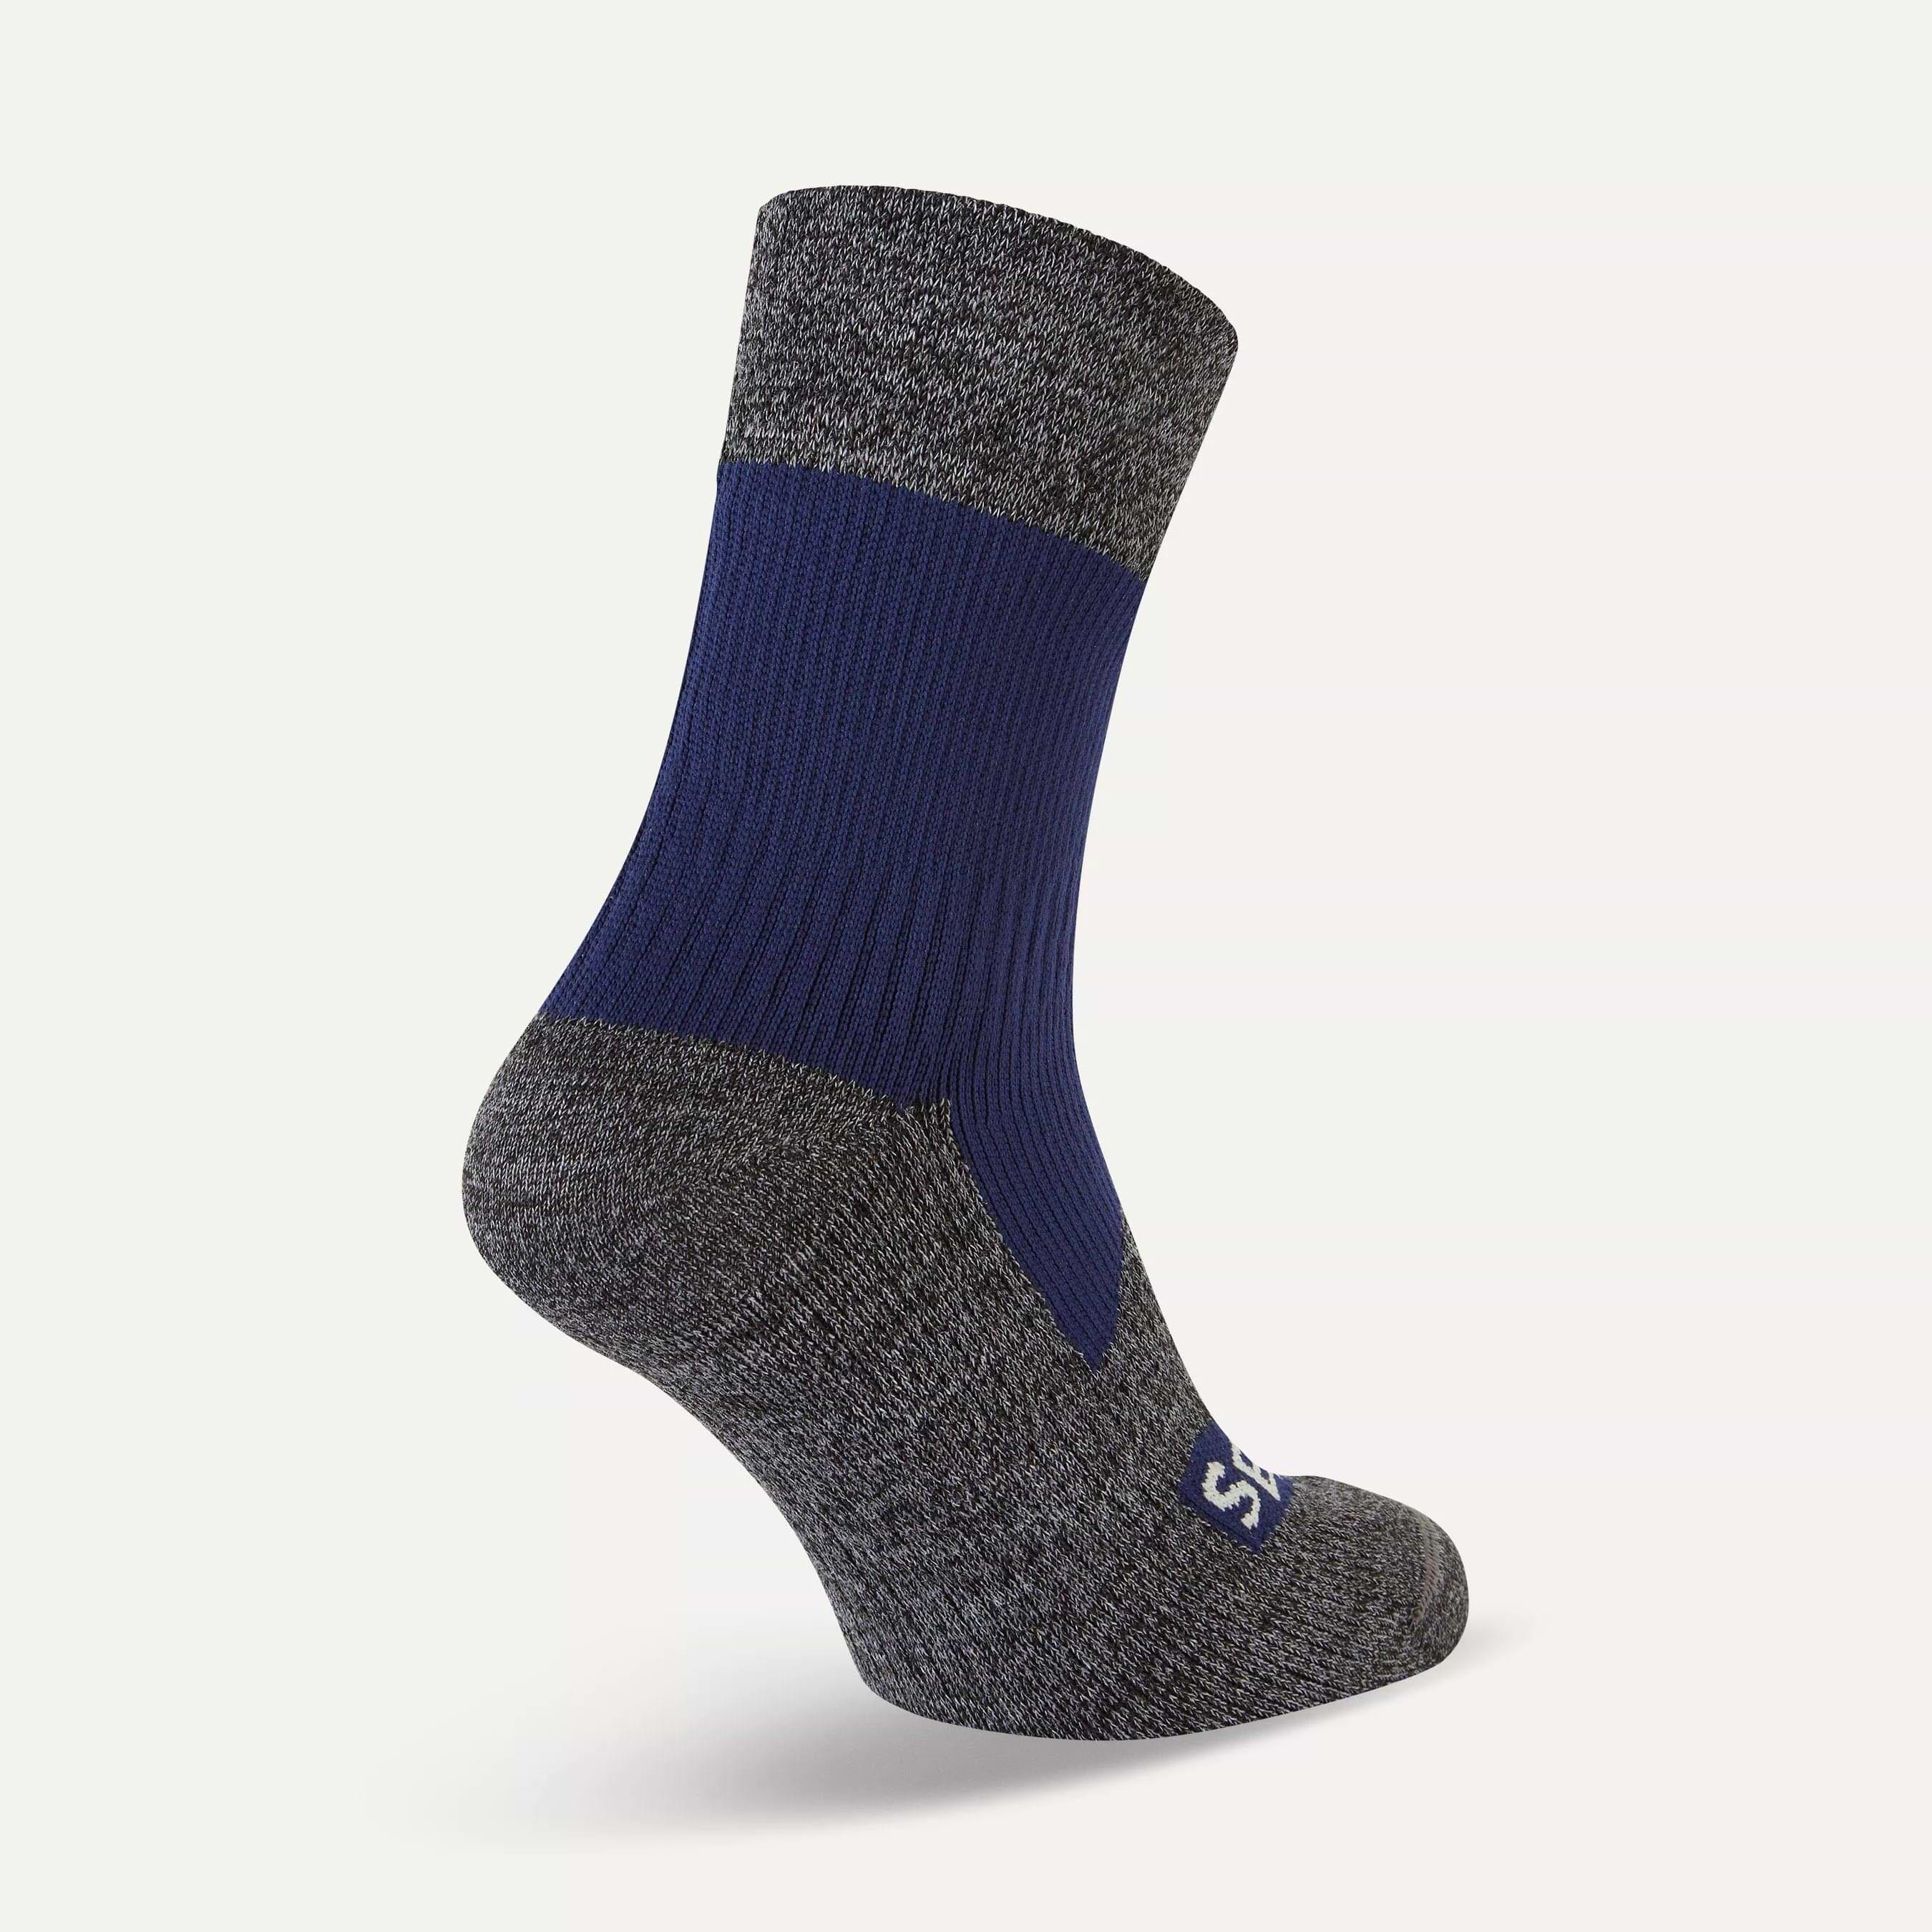 Sheer Socks For Spring Summer  Blue socks, Sheer socks, Socks